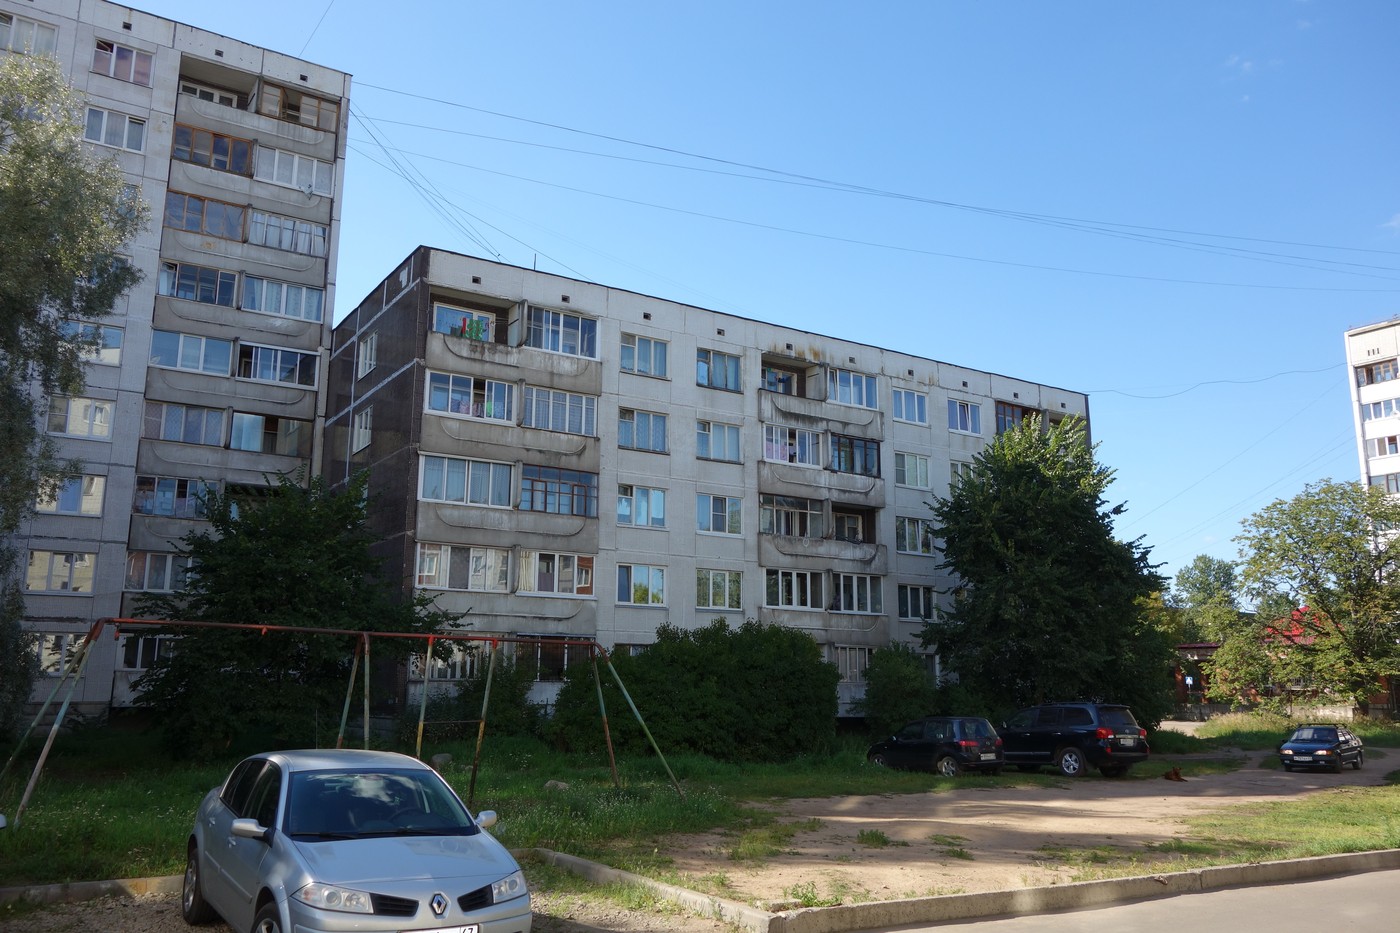 Луга, Проспект Володарского, 38 (подъезды 1-2)